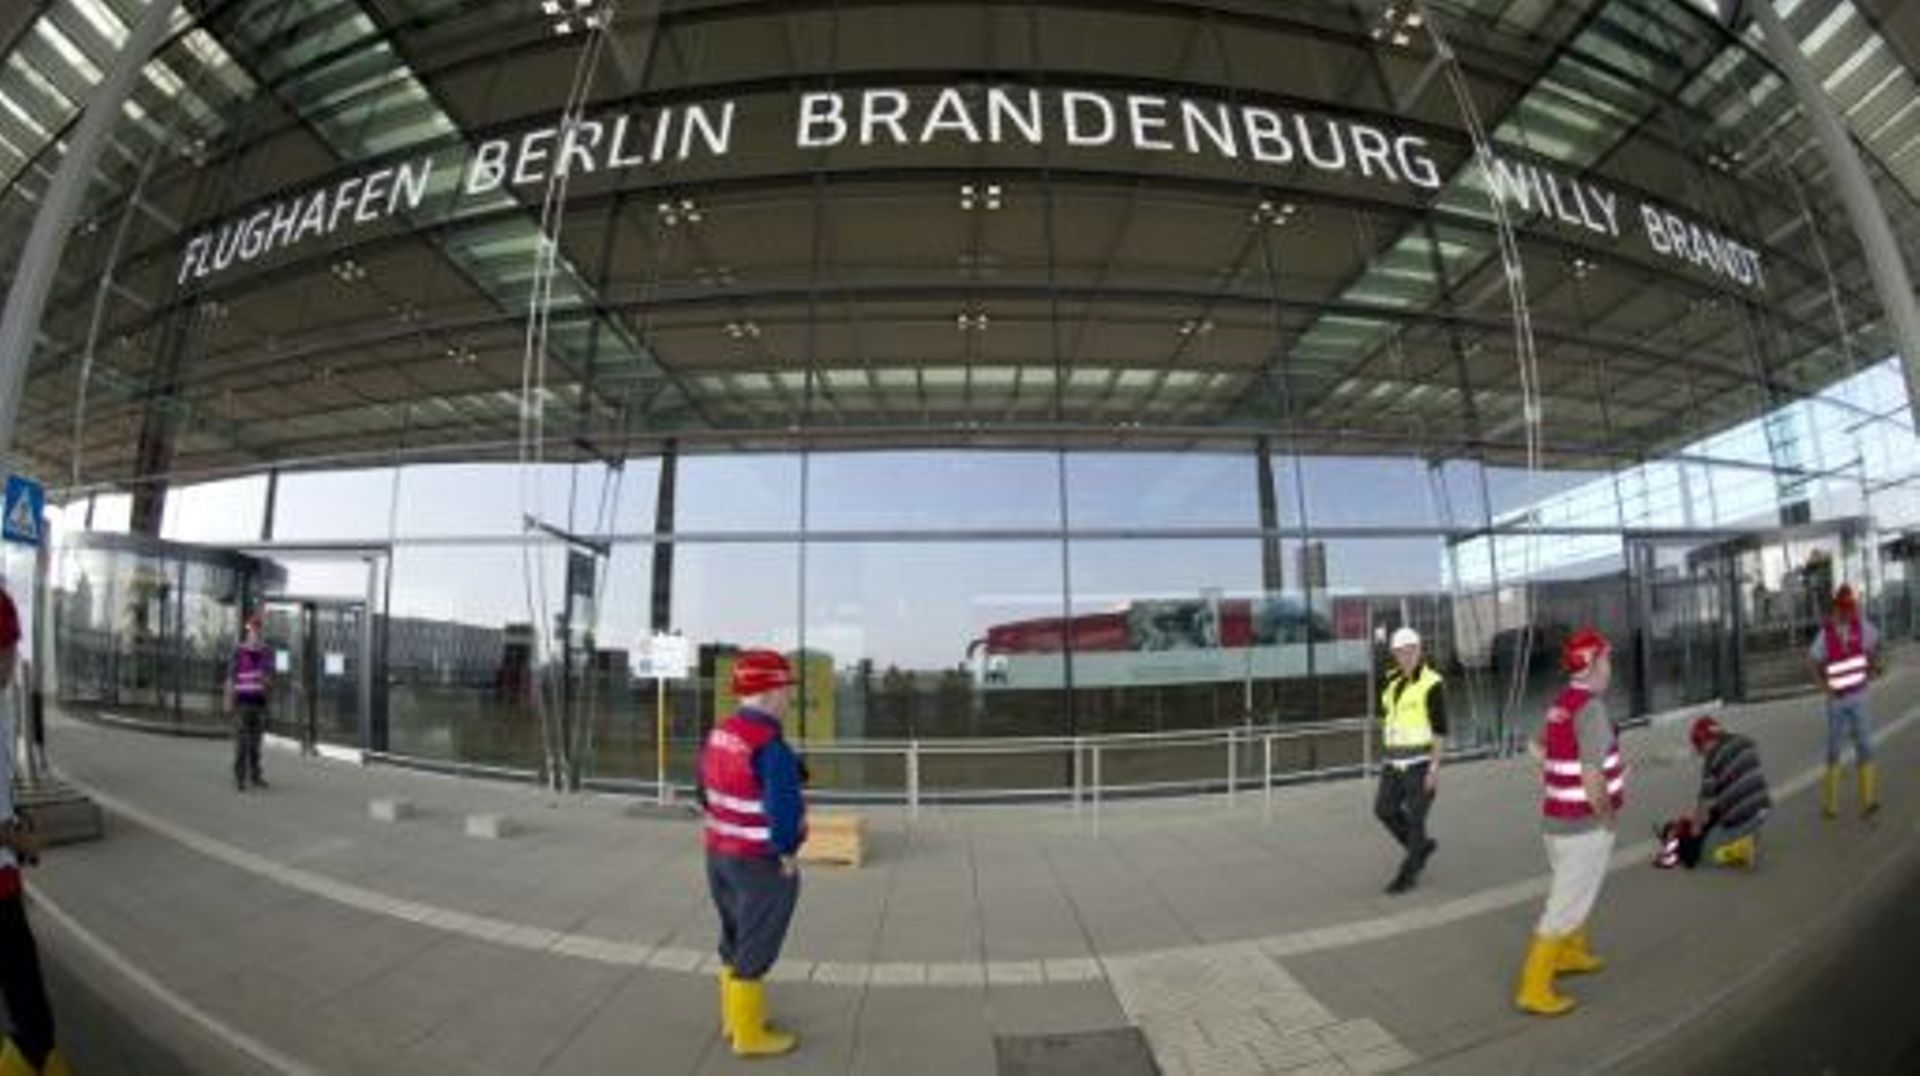 Siemens, Bosch et la filiale de Deutsche Telekom T-Systems sont soupçonnés d'avoir surfacturé des prestations à la compagnie qui construit l'aéroport de Berlin_brandebourg, situé à la périphérie de la capitale allemande